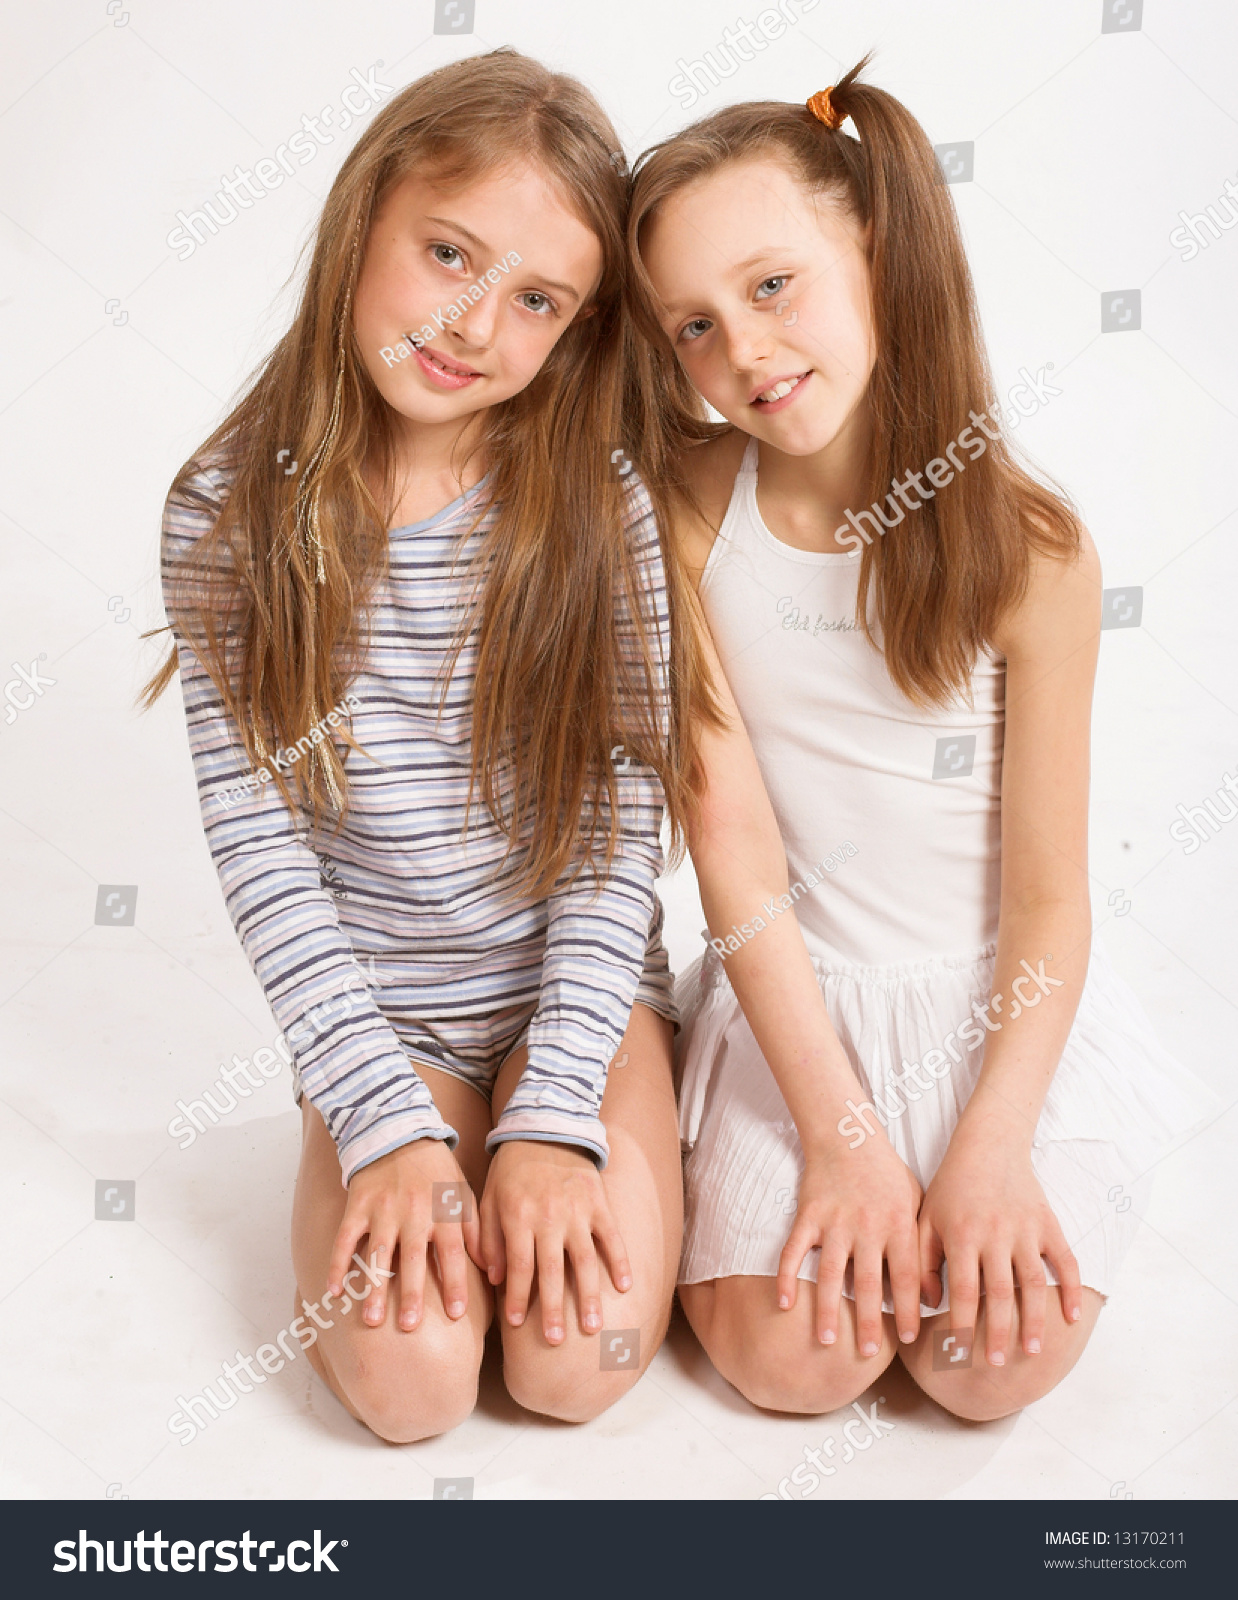 Little Girls Photos Pics